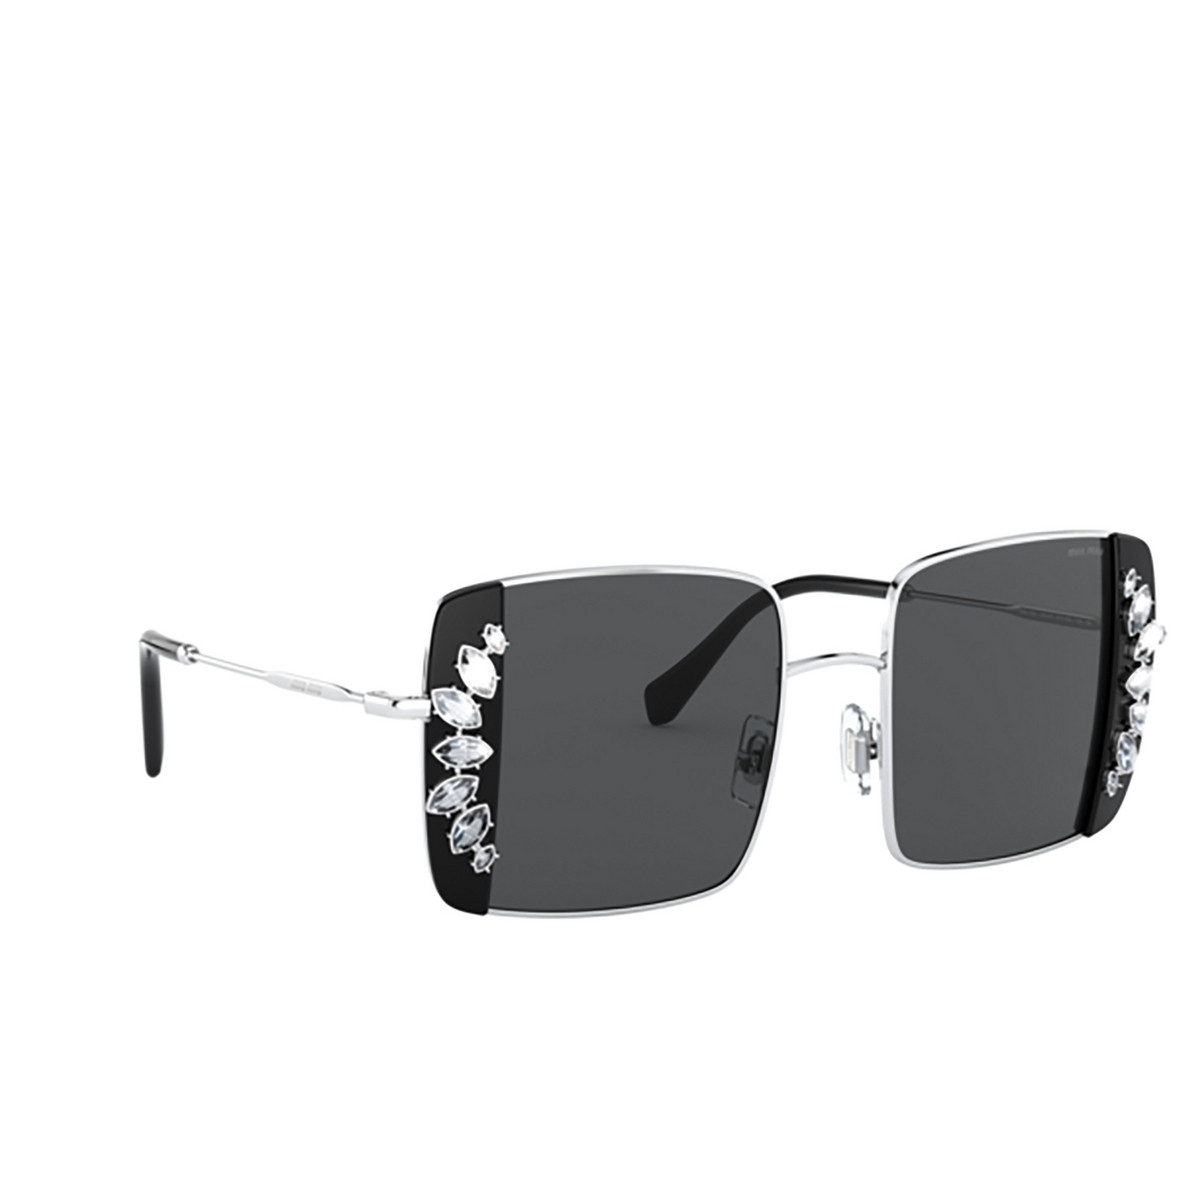 Miu Miu® Square Sunglasses: MU 56VS color Silver / Black 01E5S0 - three-quarters view.